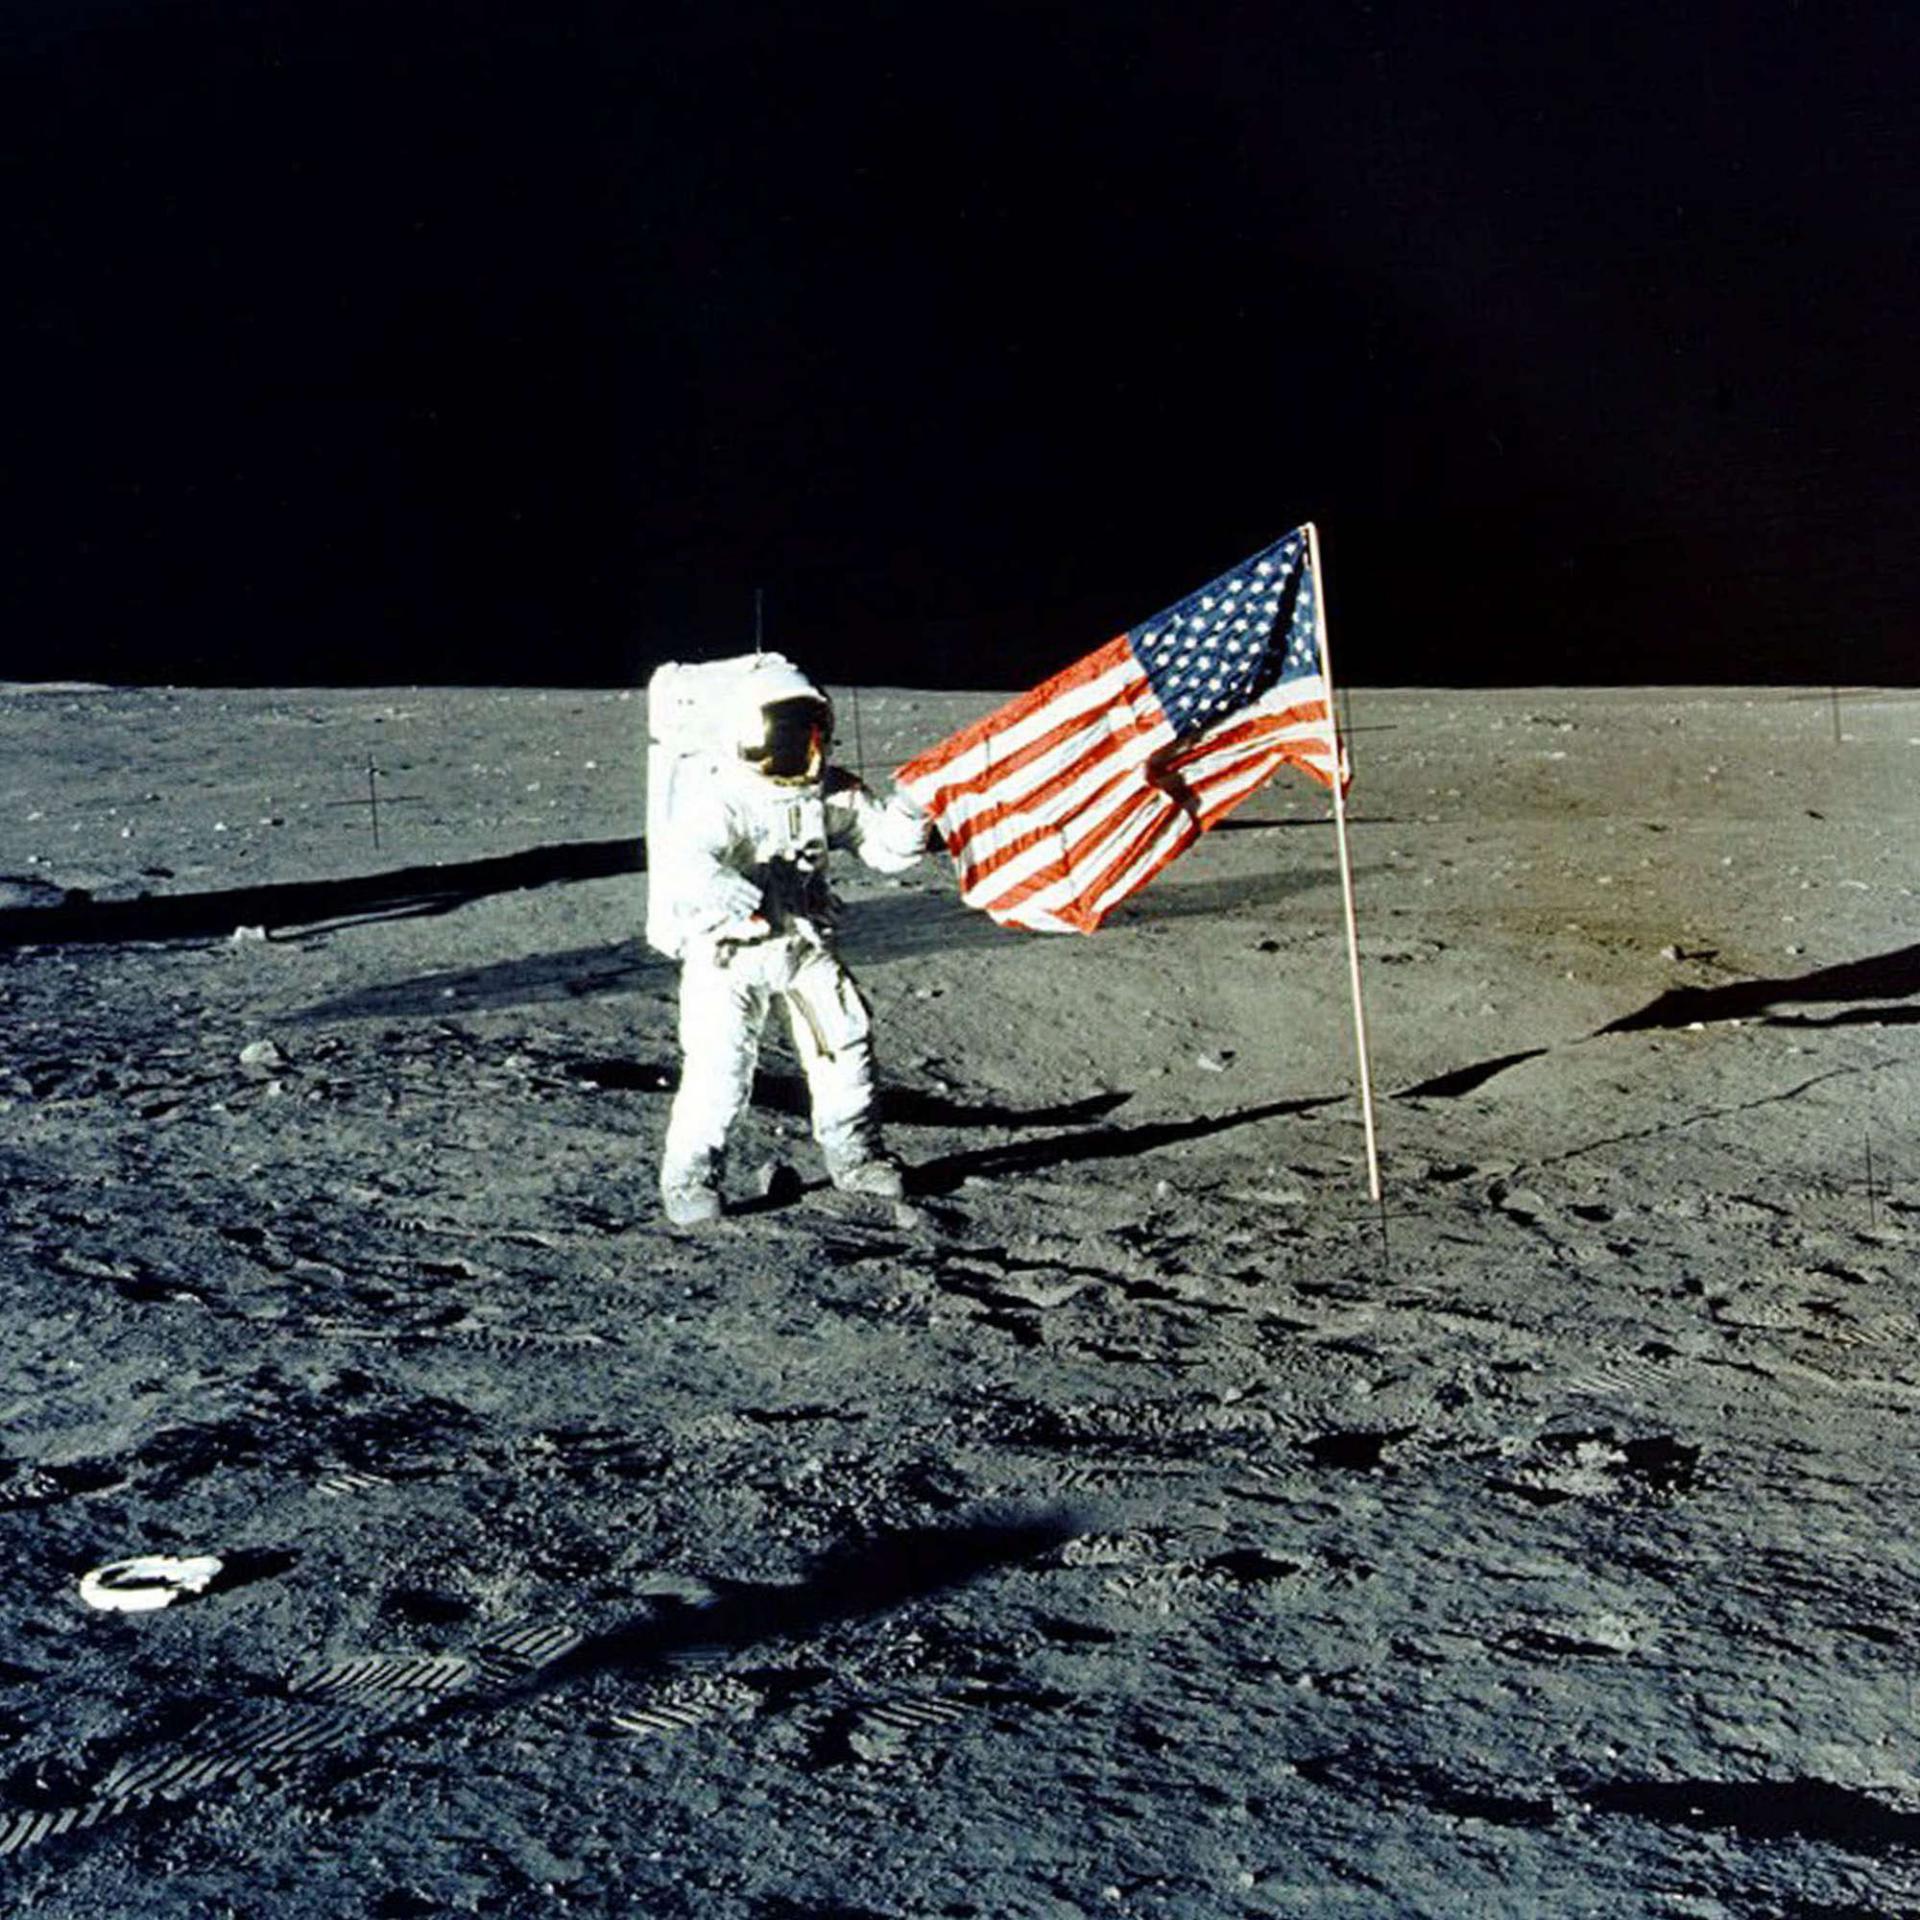 رائد فضاء أميركي في مهمة أبولو 12 يرفع العلم الأميركي على سطح القمر